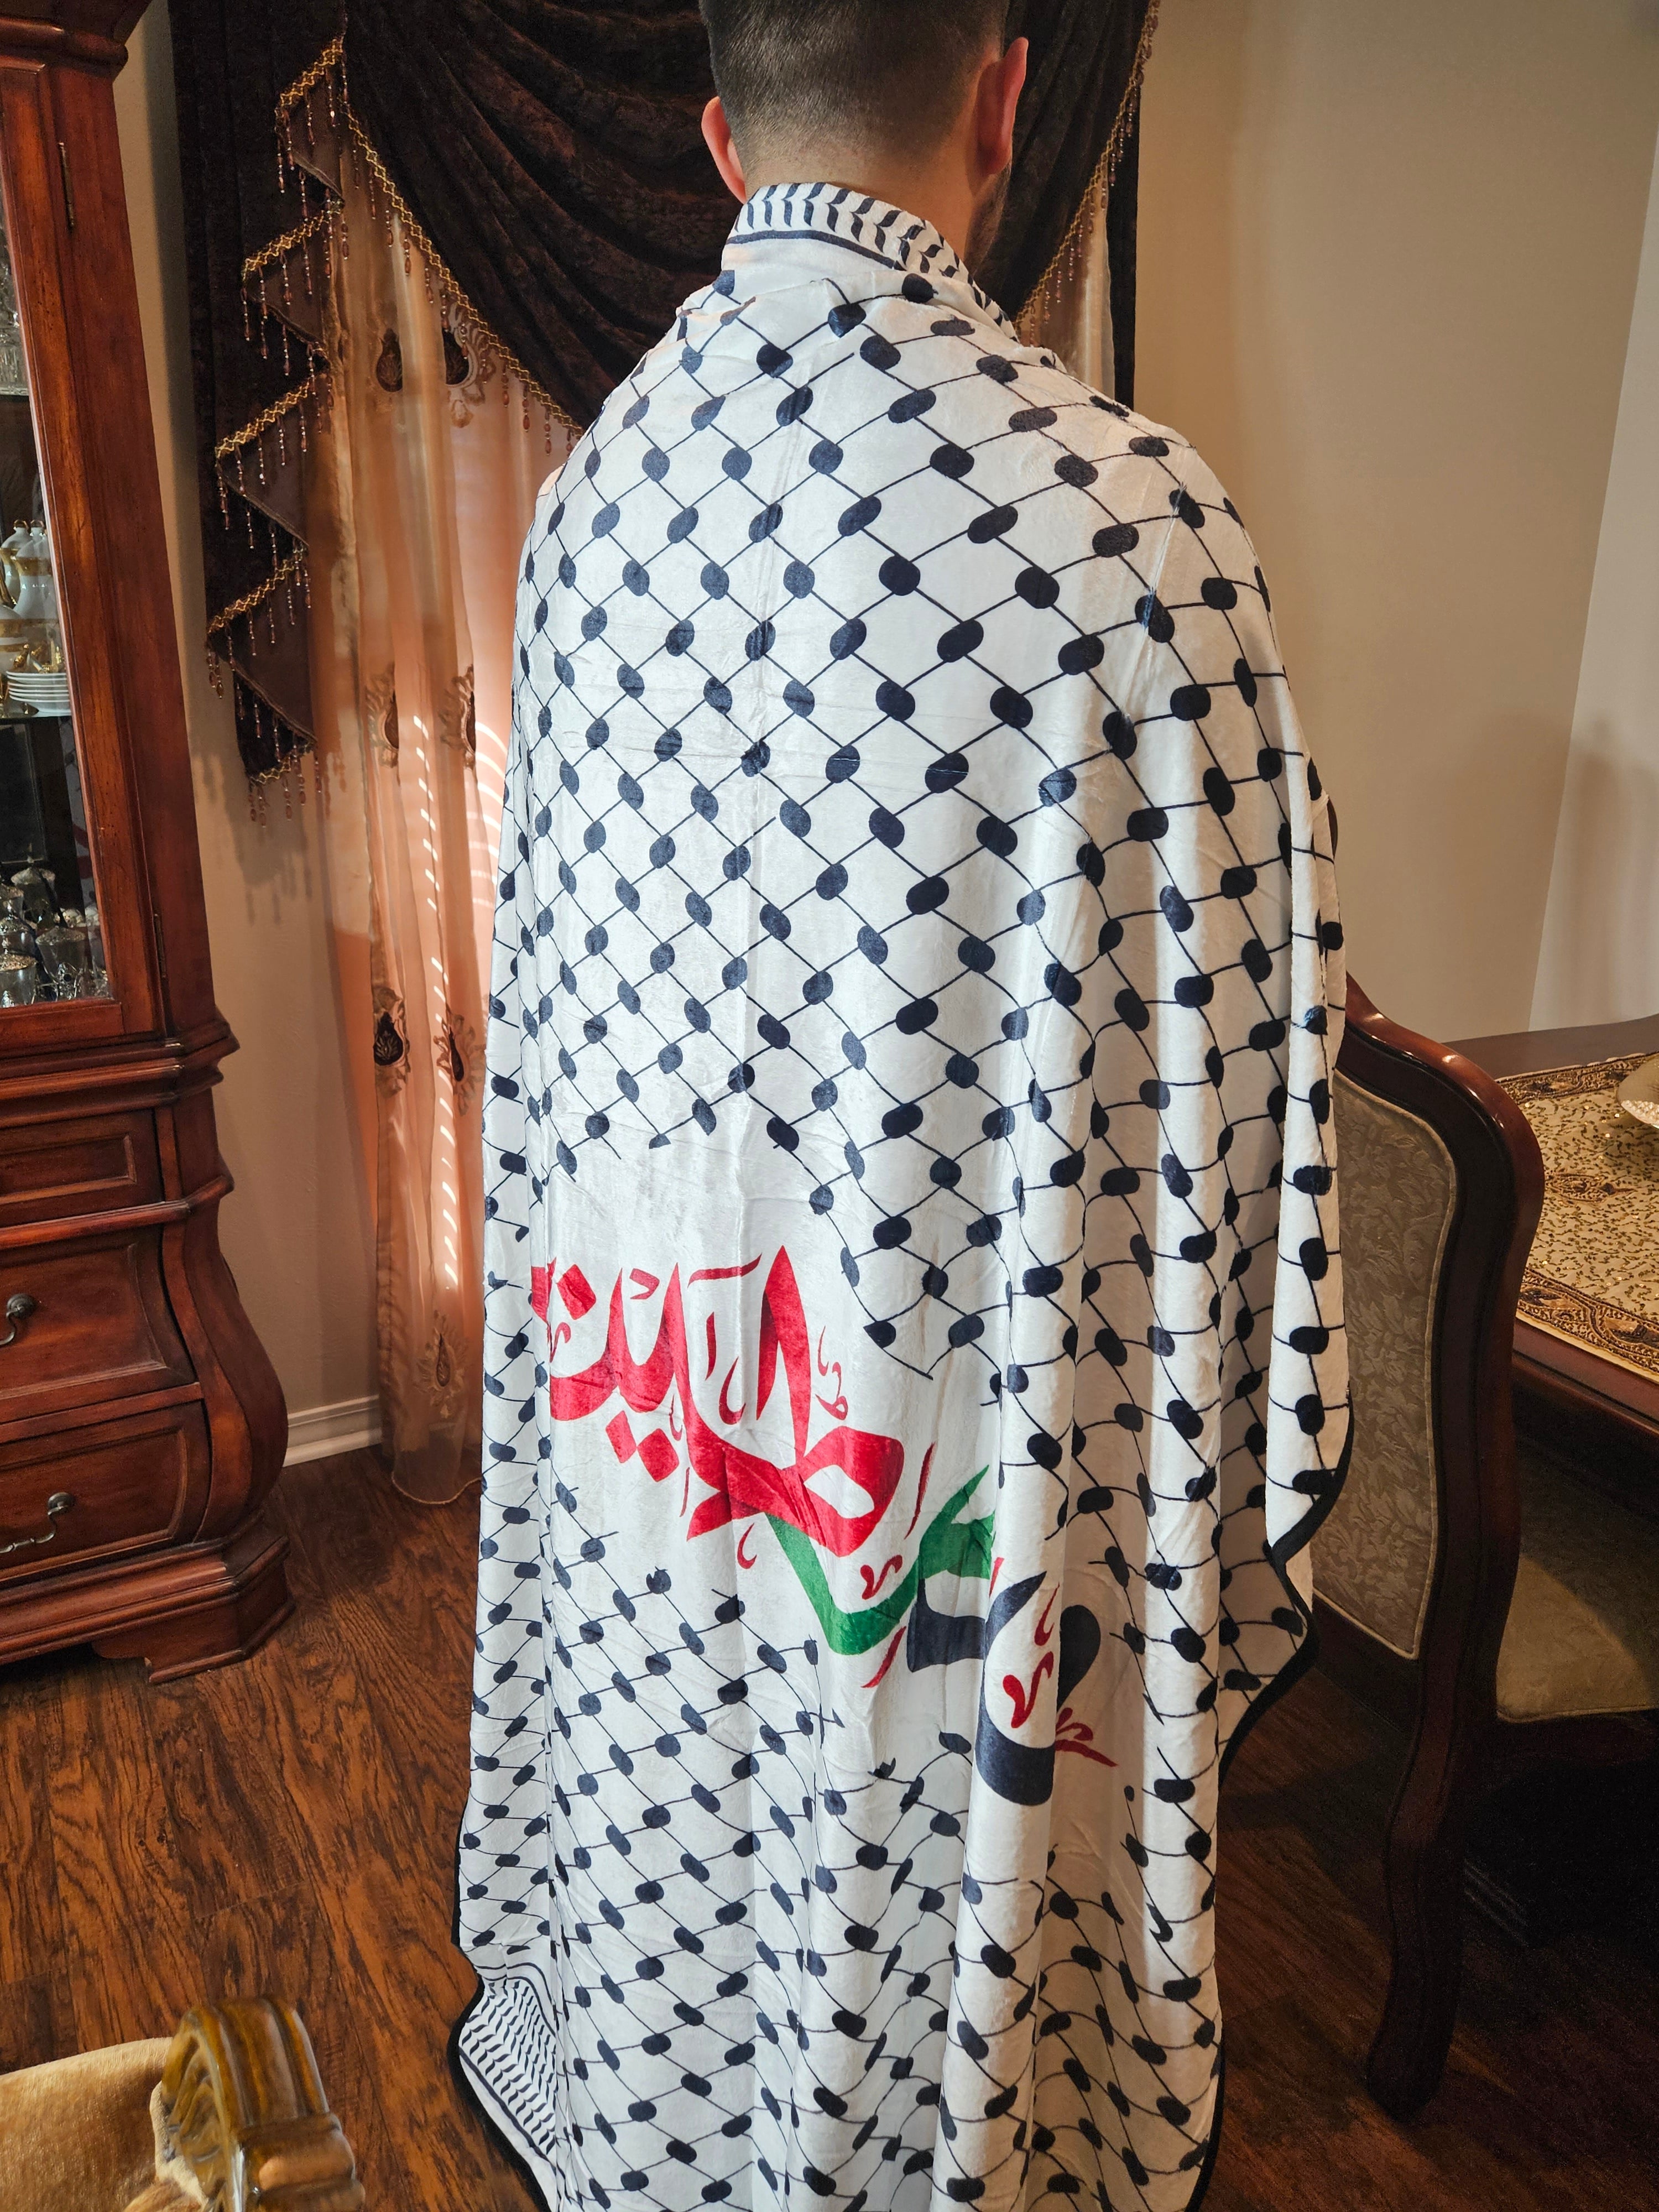 Palestine Keffiyeh Blanket Throw 50 in x 70 in - Habibi Heritage